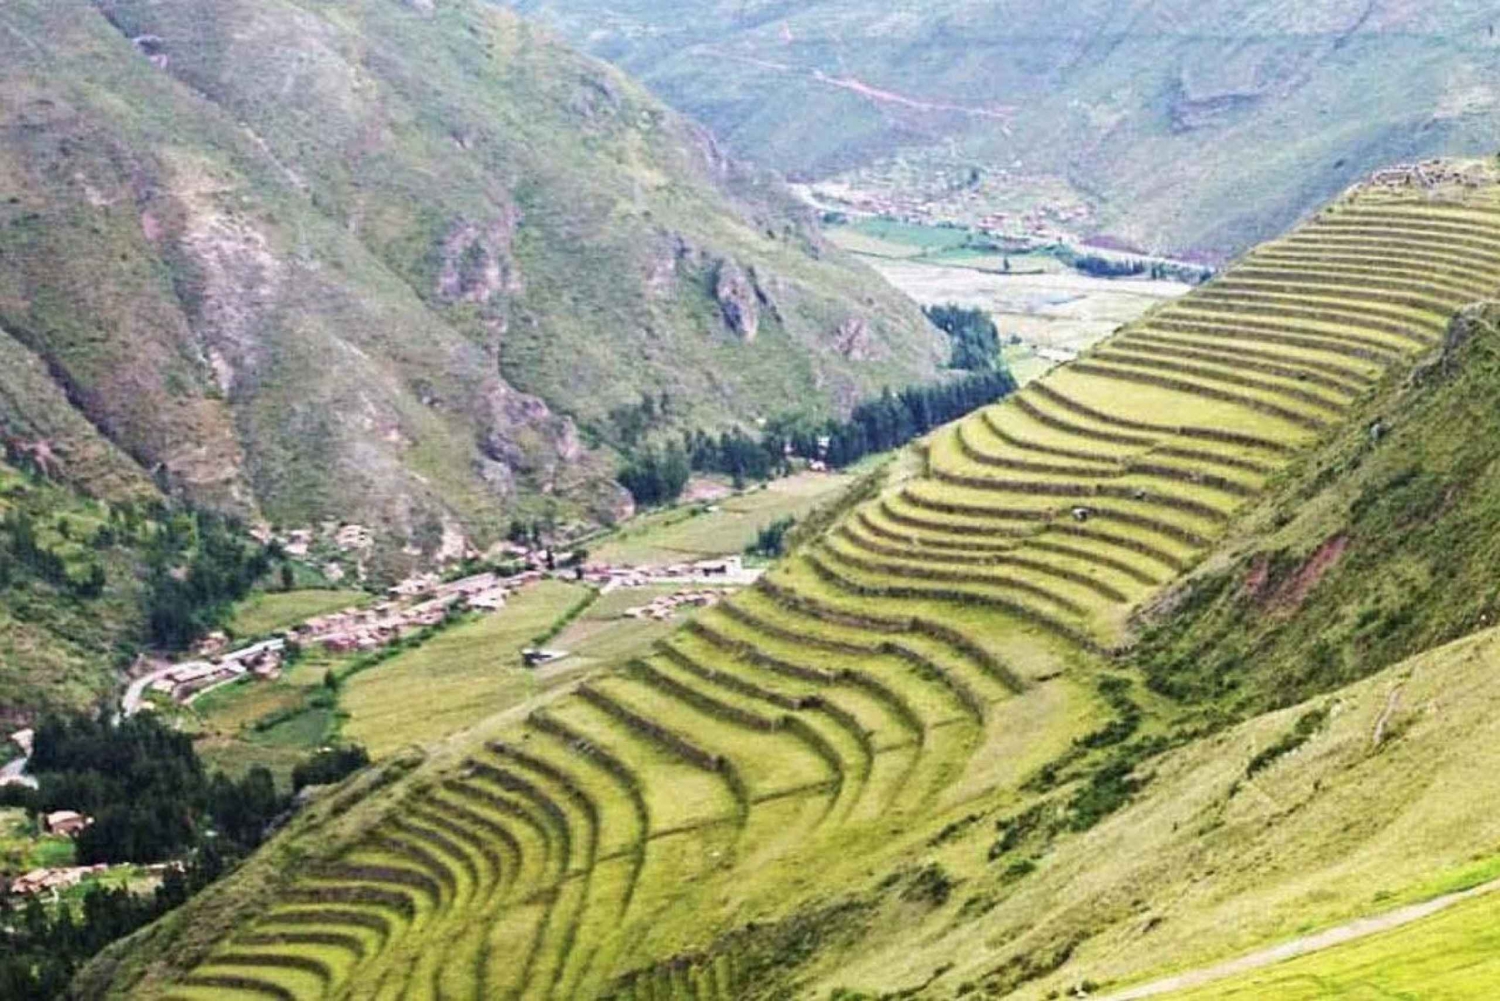 Cuscosta || Pyhä laakso - Ollantaytambo - Pisac || 1 päivä